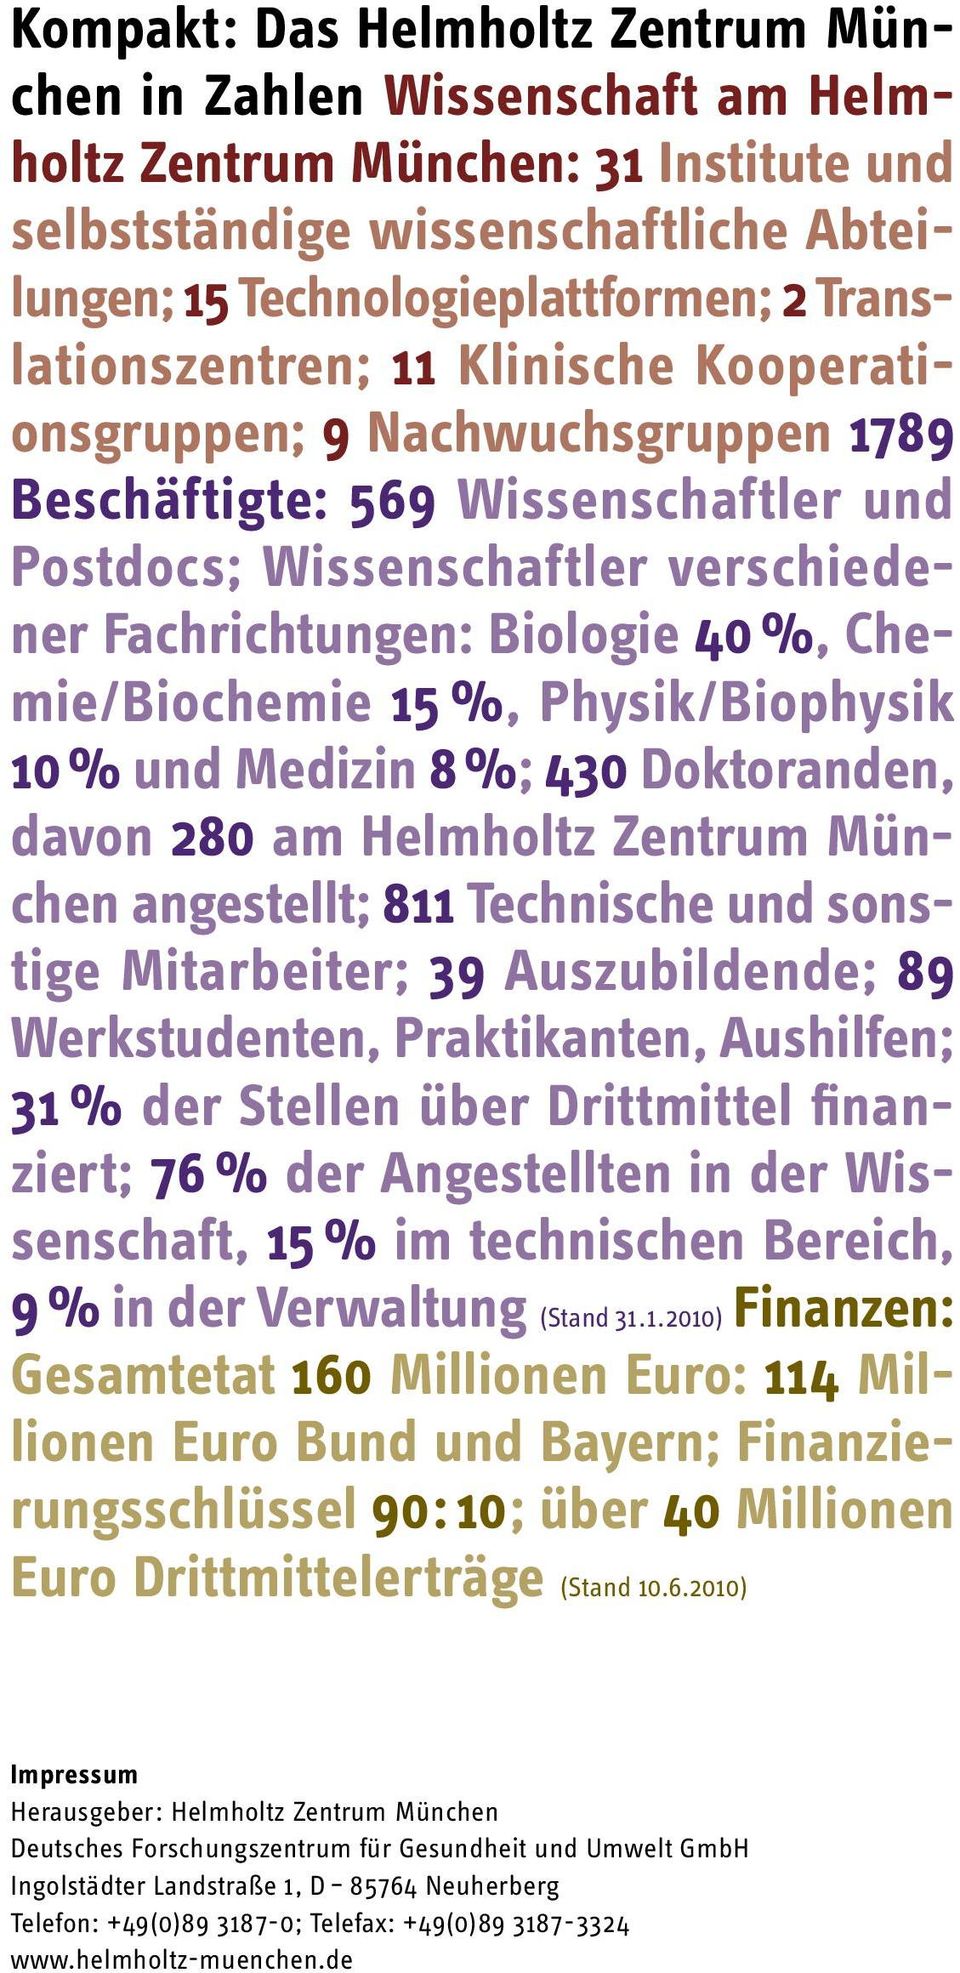 Chemie/Biochemie 15 %, Physik/Biophysik 10 % und Medizin 8 %; 430 Doktoranden, davon 280 am Helmholtz Zentrum München angestellt; 811 Technische und sonstige Mitarbeiter; 39 Auszubildende; 89